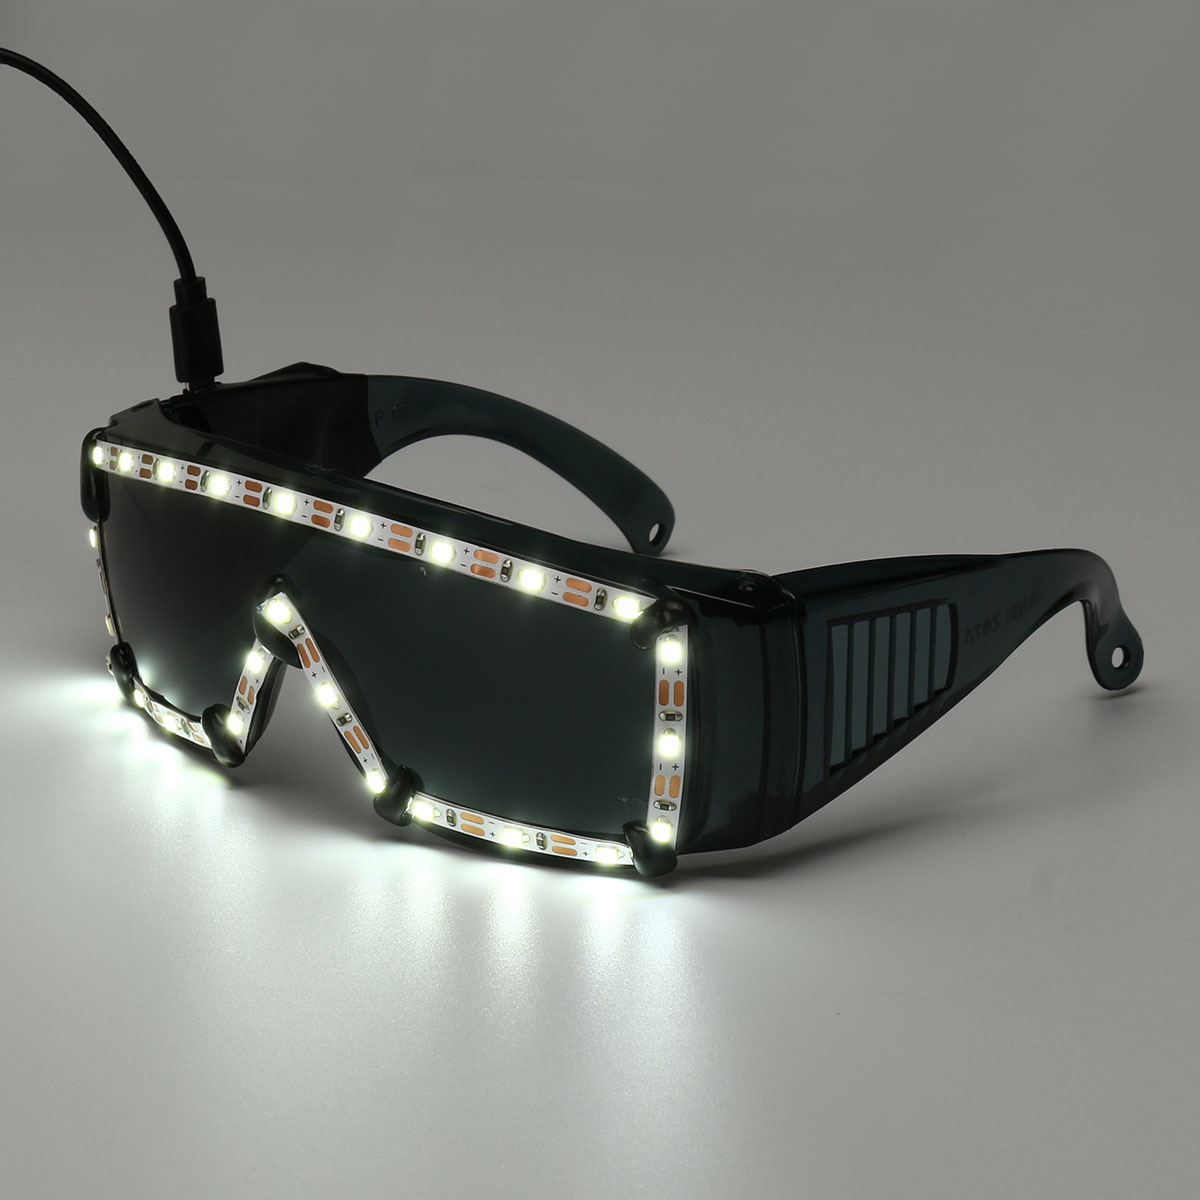 White-LED-Glasses-Light-Up-Glow-Sunglasses-Eyewear-Shades-Nightclub-Party-Decor-1525653-2